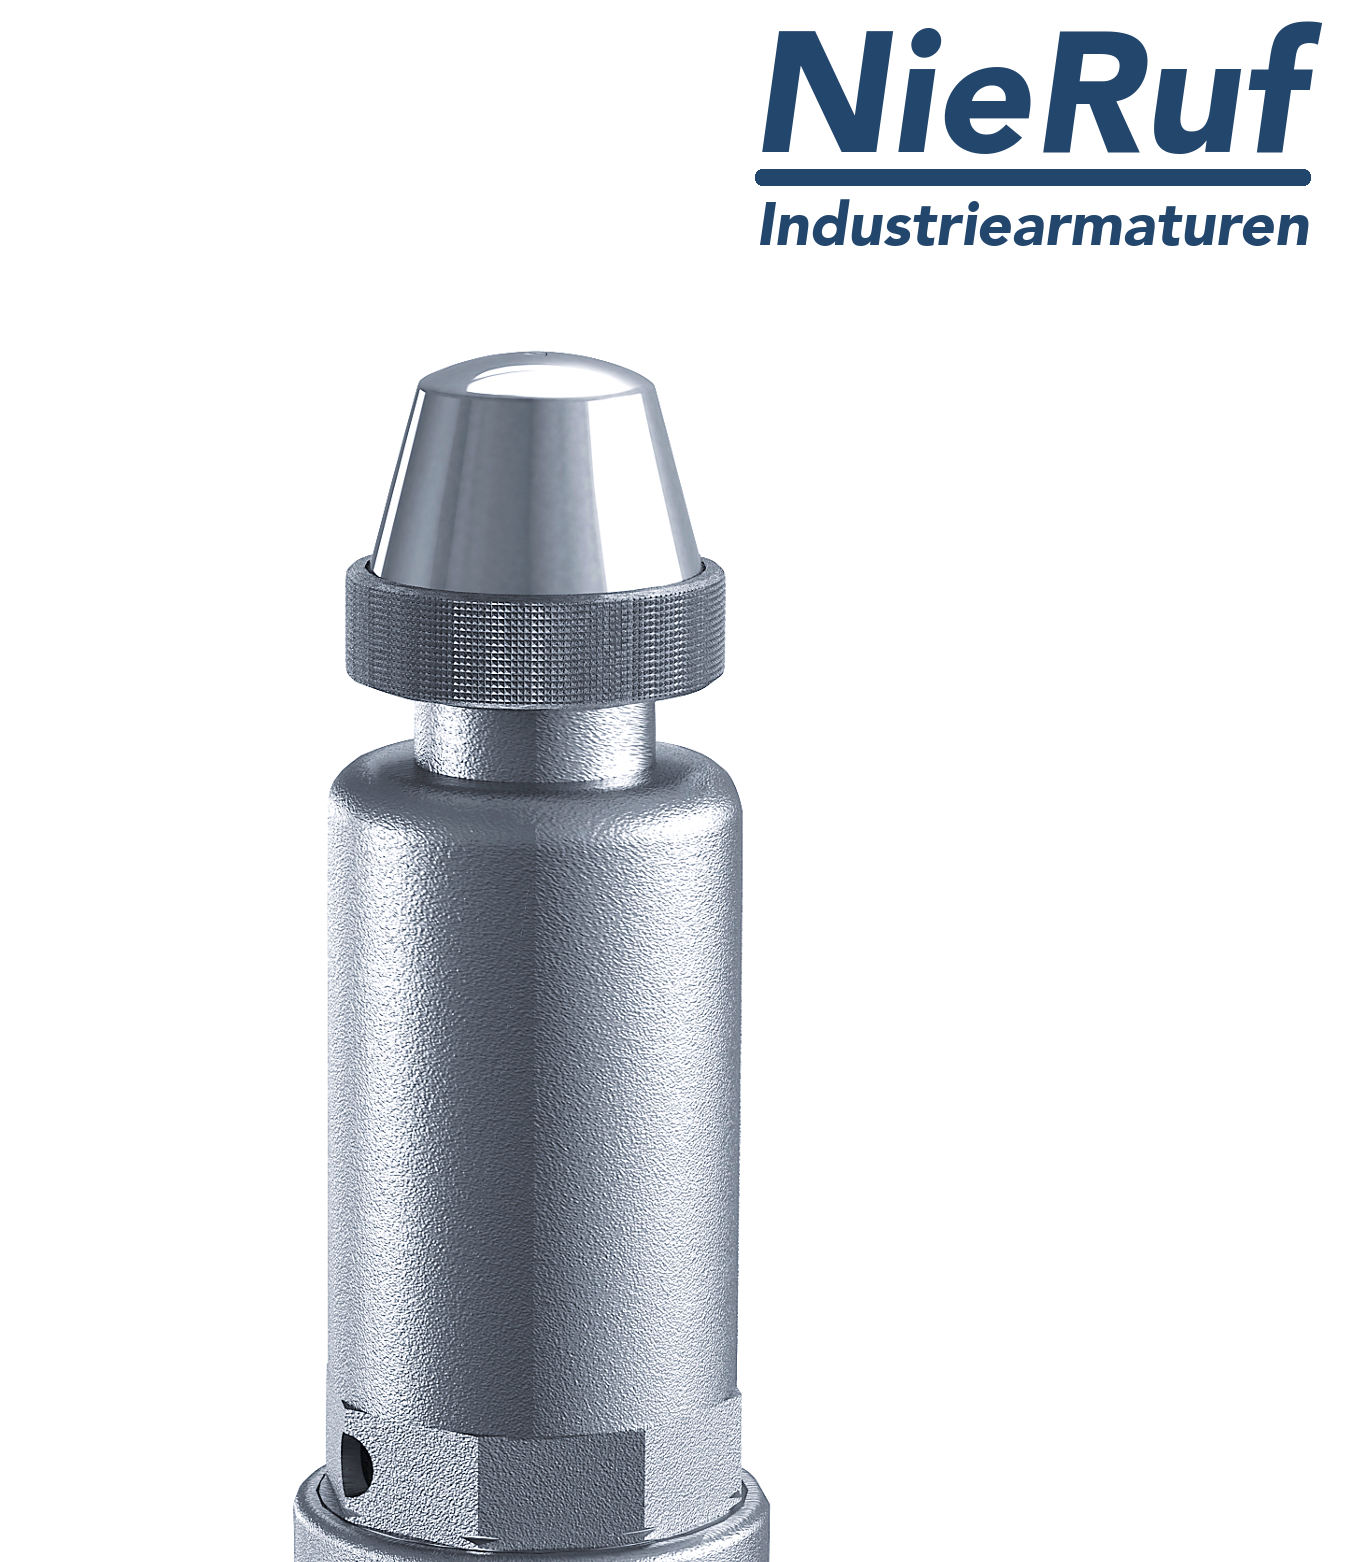 safety valve 1 1/2" x 2" fm SV05 neutral liquid media, stainless steel FKM